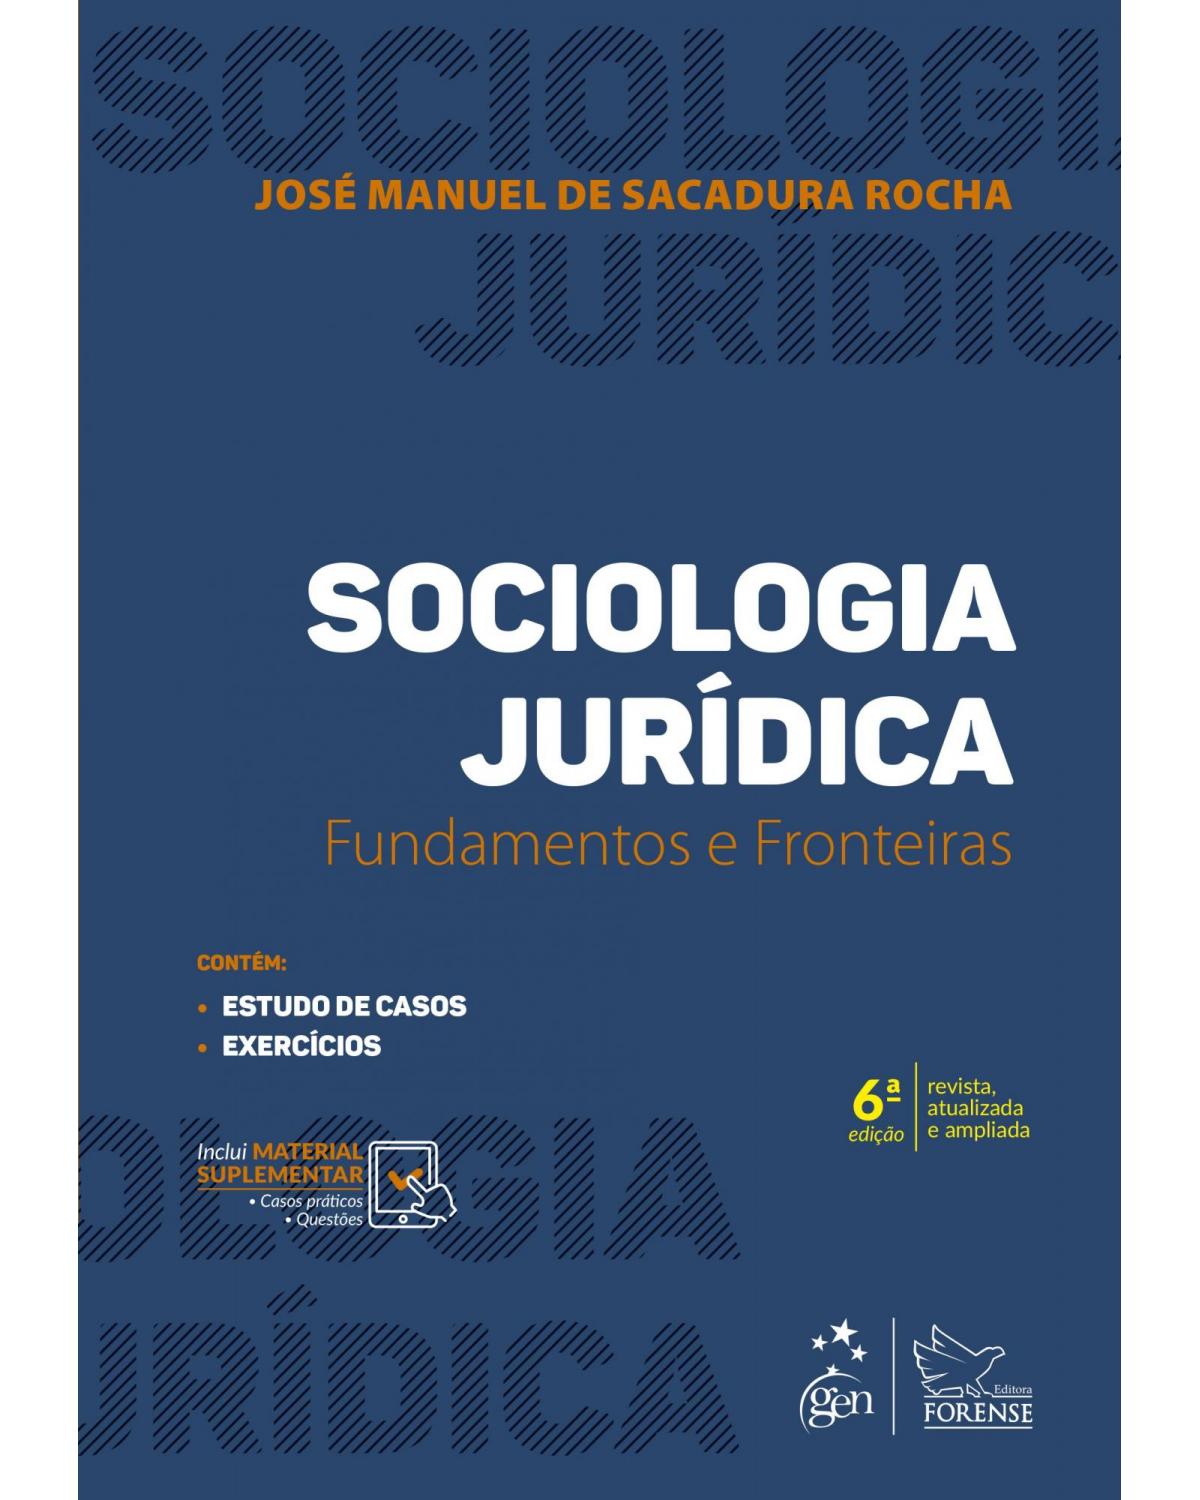 Sociologia jurídica - fundamentos e fronteiras - 6ª Edição | 2019